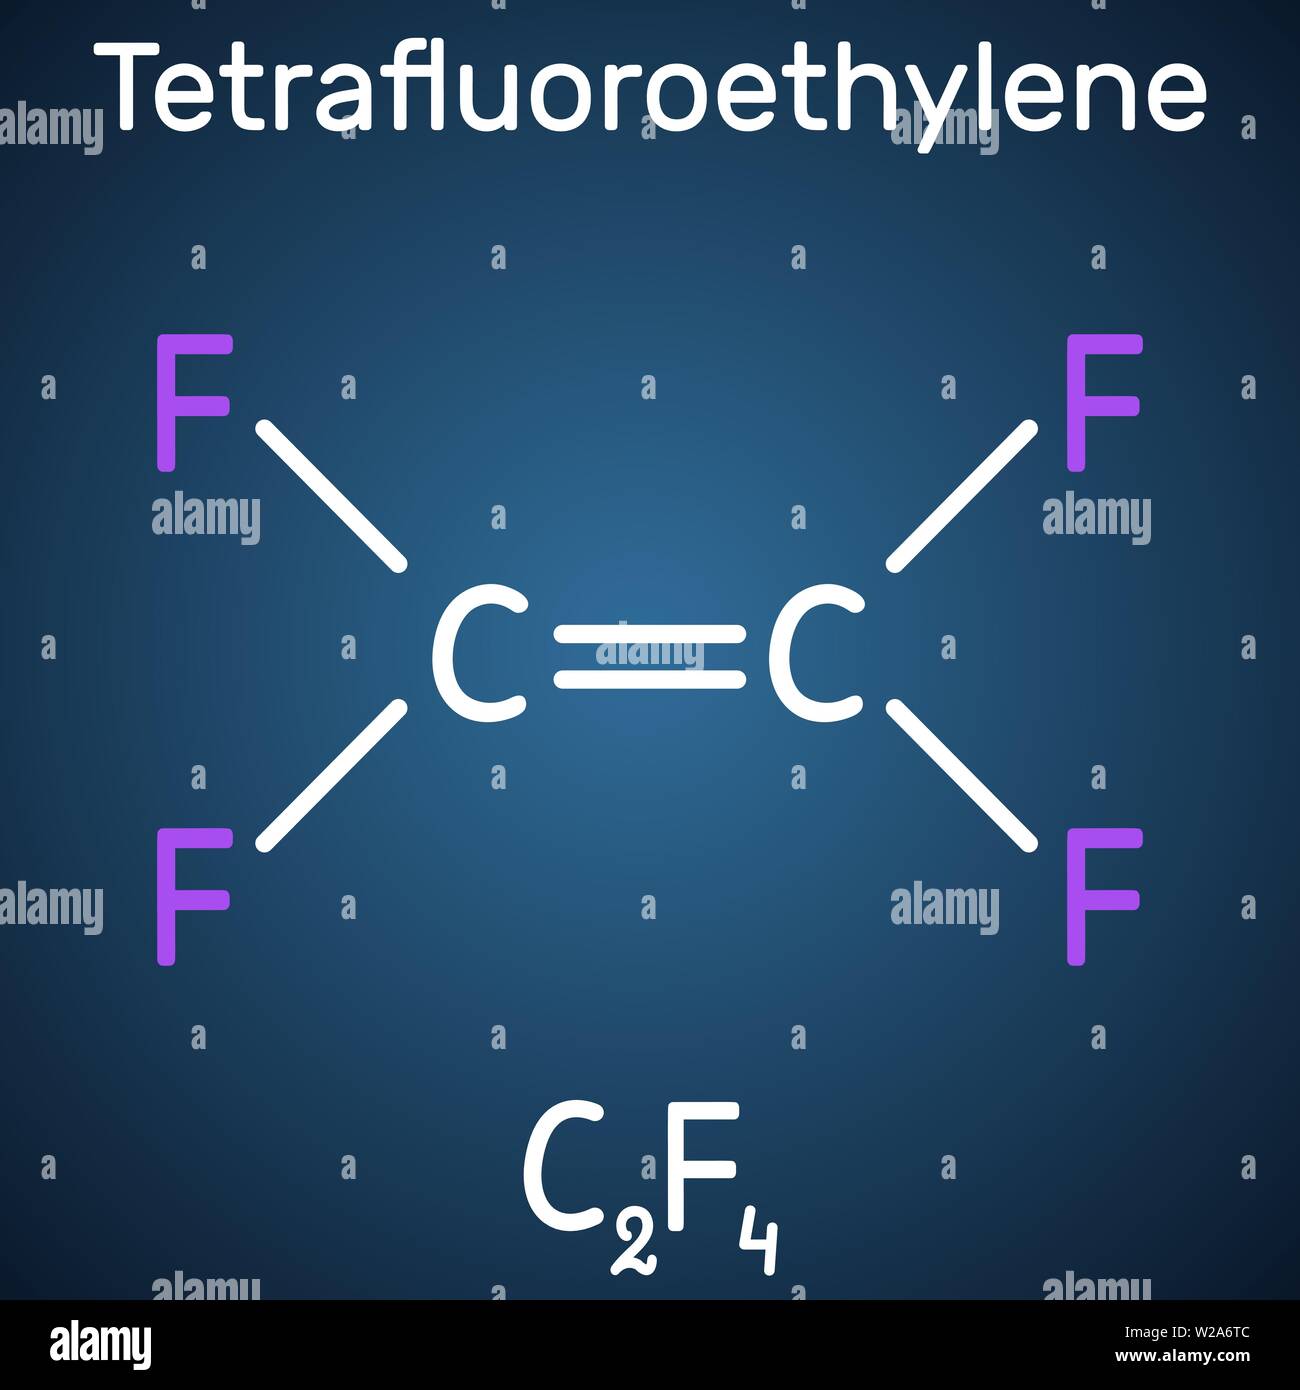 Tetrafluorethylen- oder TFE-Molekül, ist ein Monomer aus Polytetrafluorethylen oder PTFE. Es gehört zur Familie der Fluorkohlenwasserstoffe. Strukturelle chemische Stock Vektor